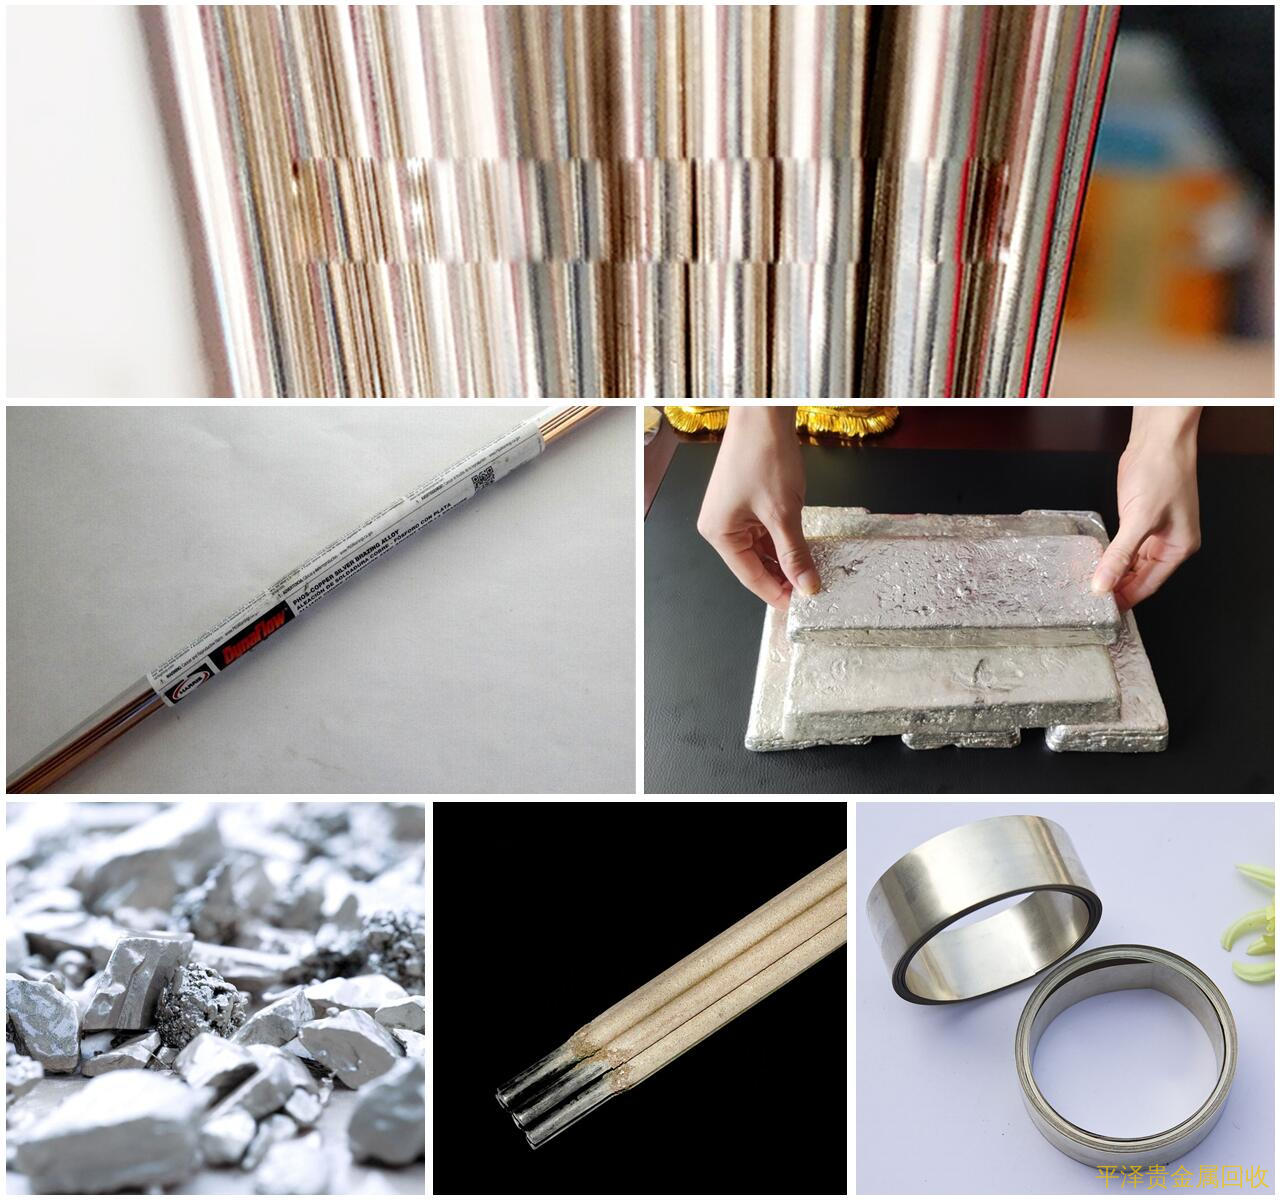 暂且分析分析深圳银胶贵金属废料提炼回收 30%银焊环回收多少钱